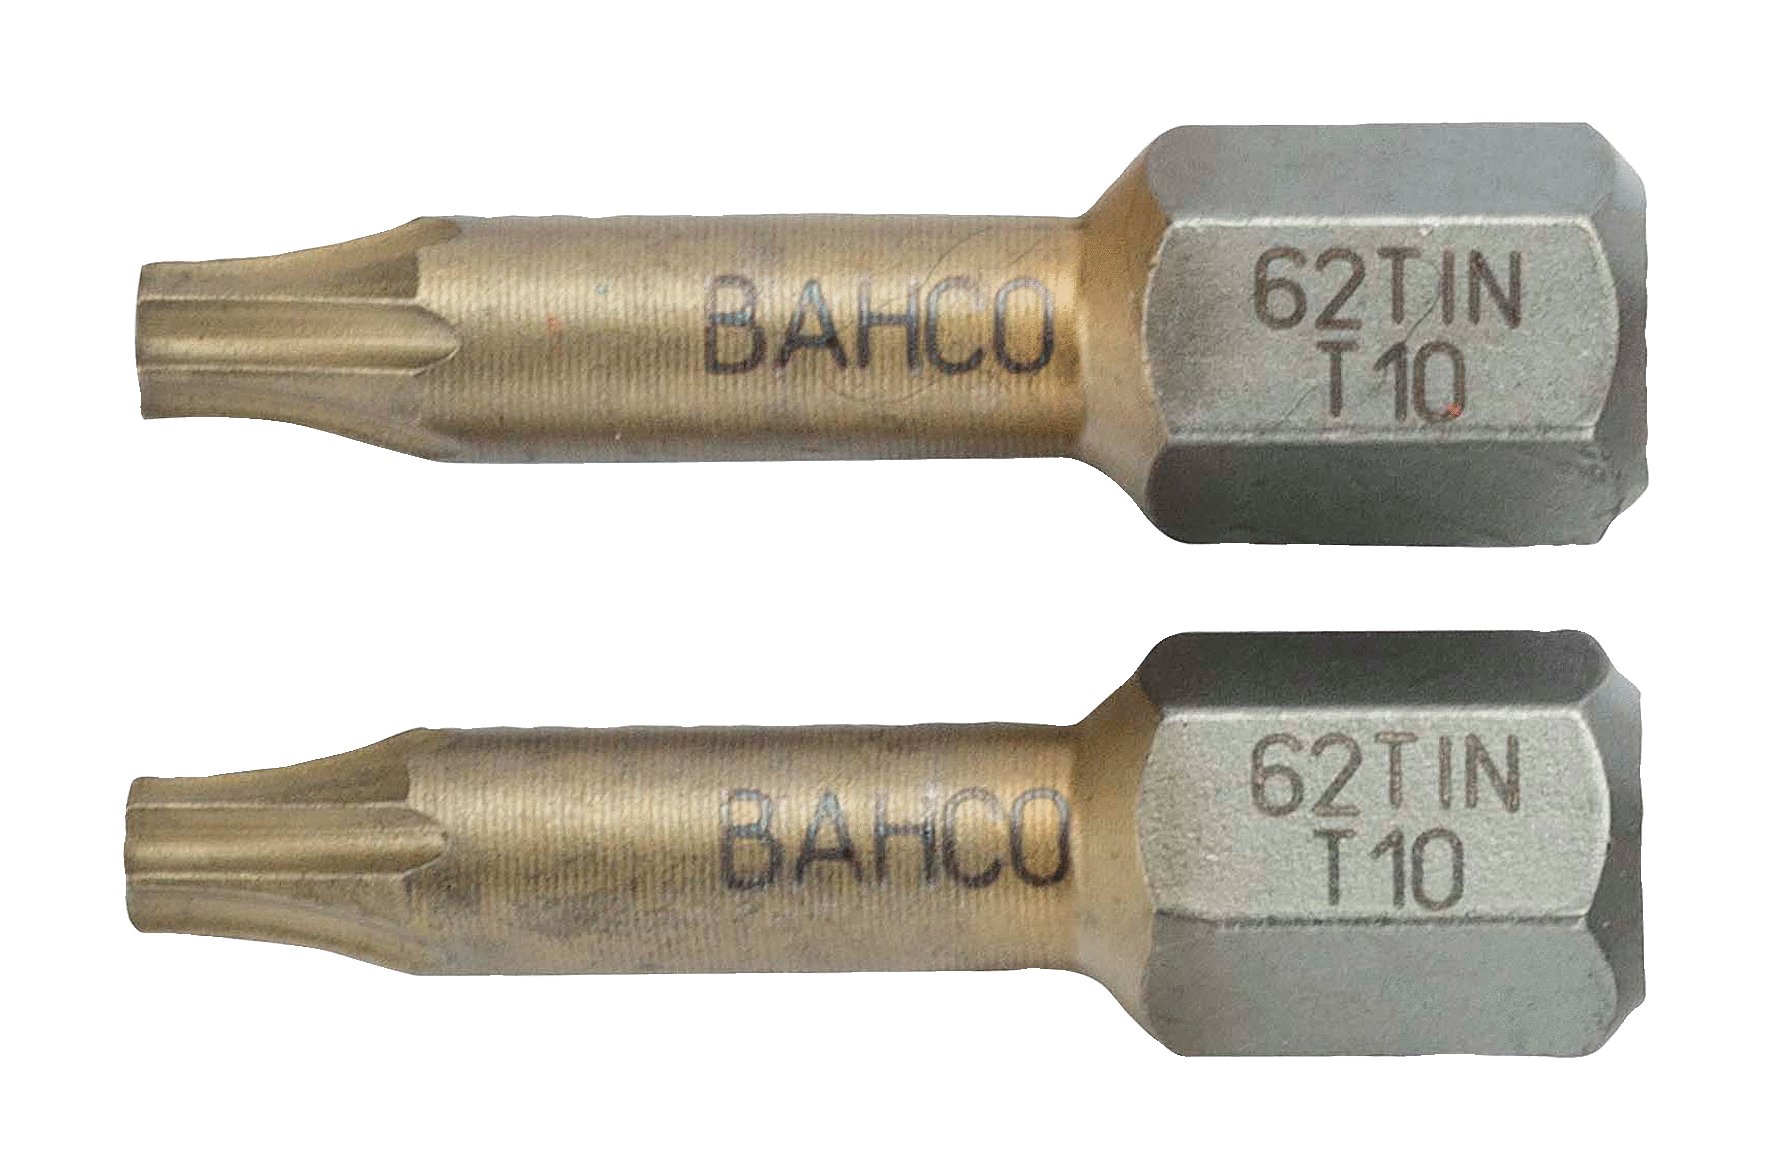 картинка Торсионные биты с покрытием из нитрида титана для отверток Torx®, 25 мм BAHCO 62TIN/T25 от магазина "Элит-инструмент"